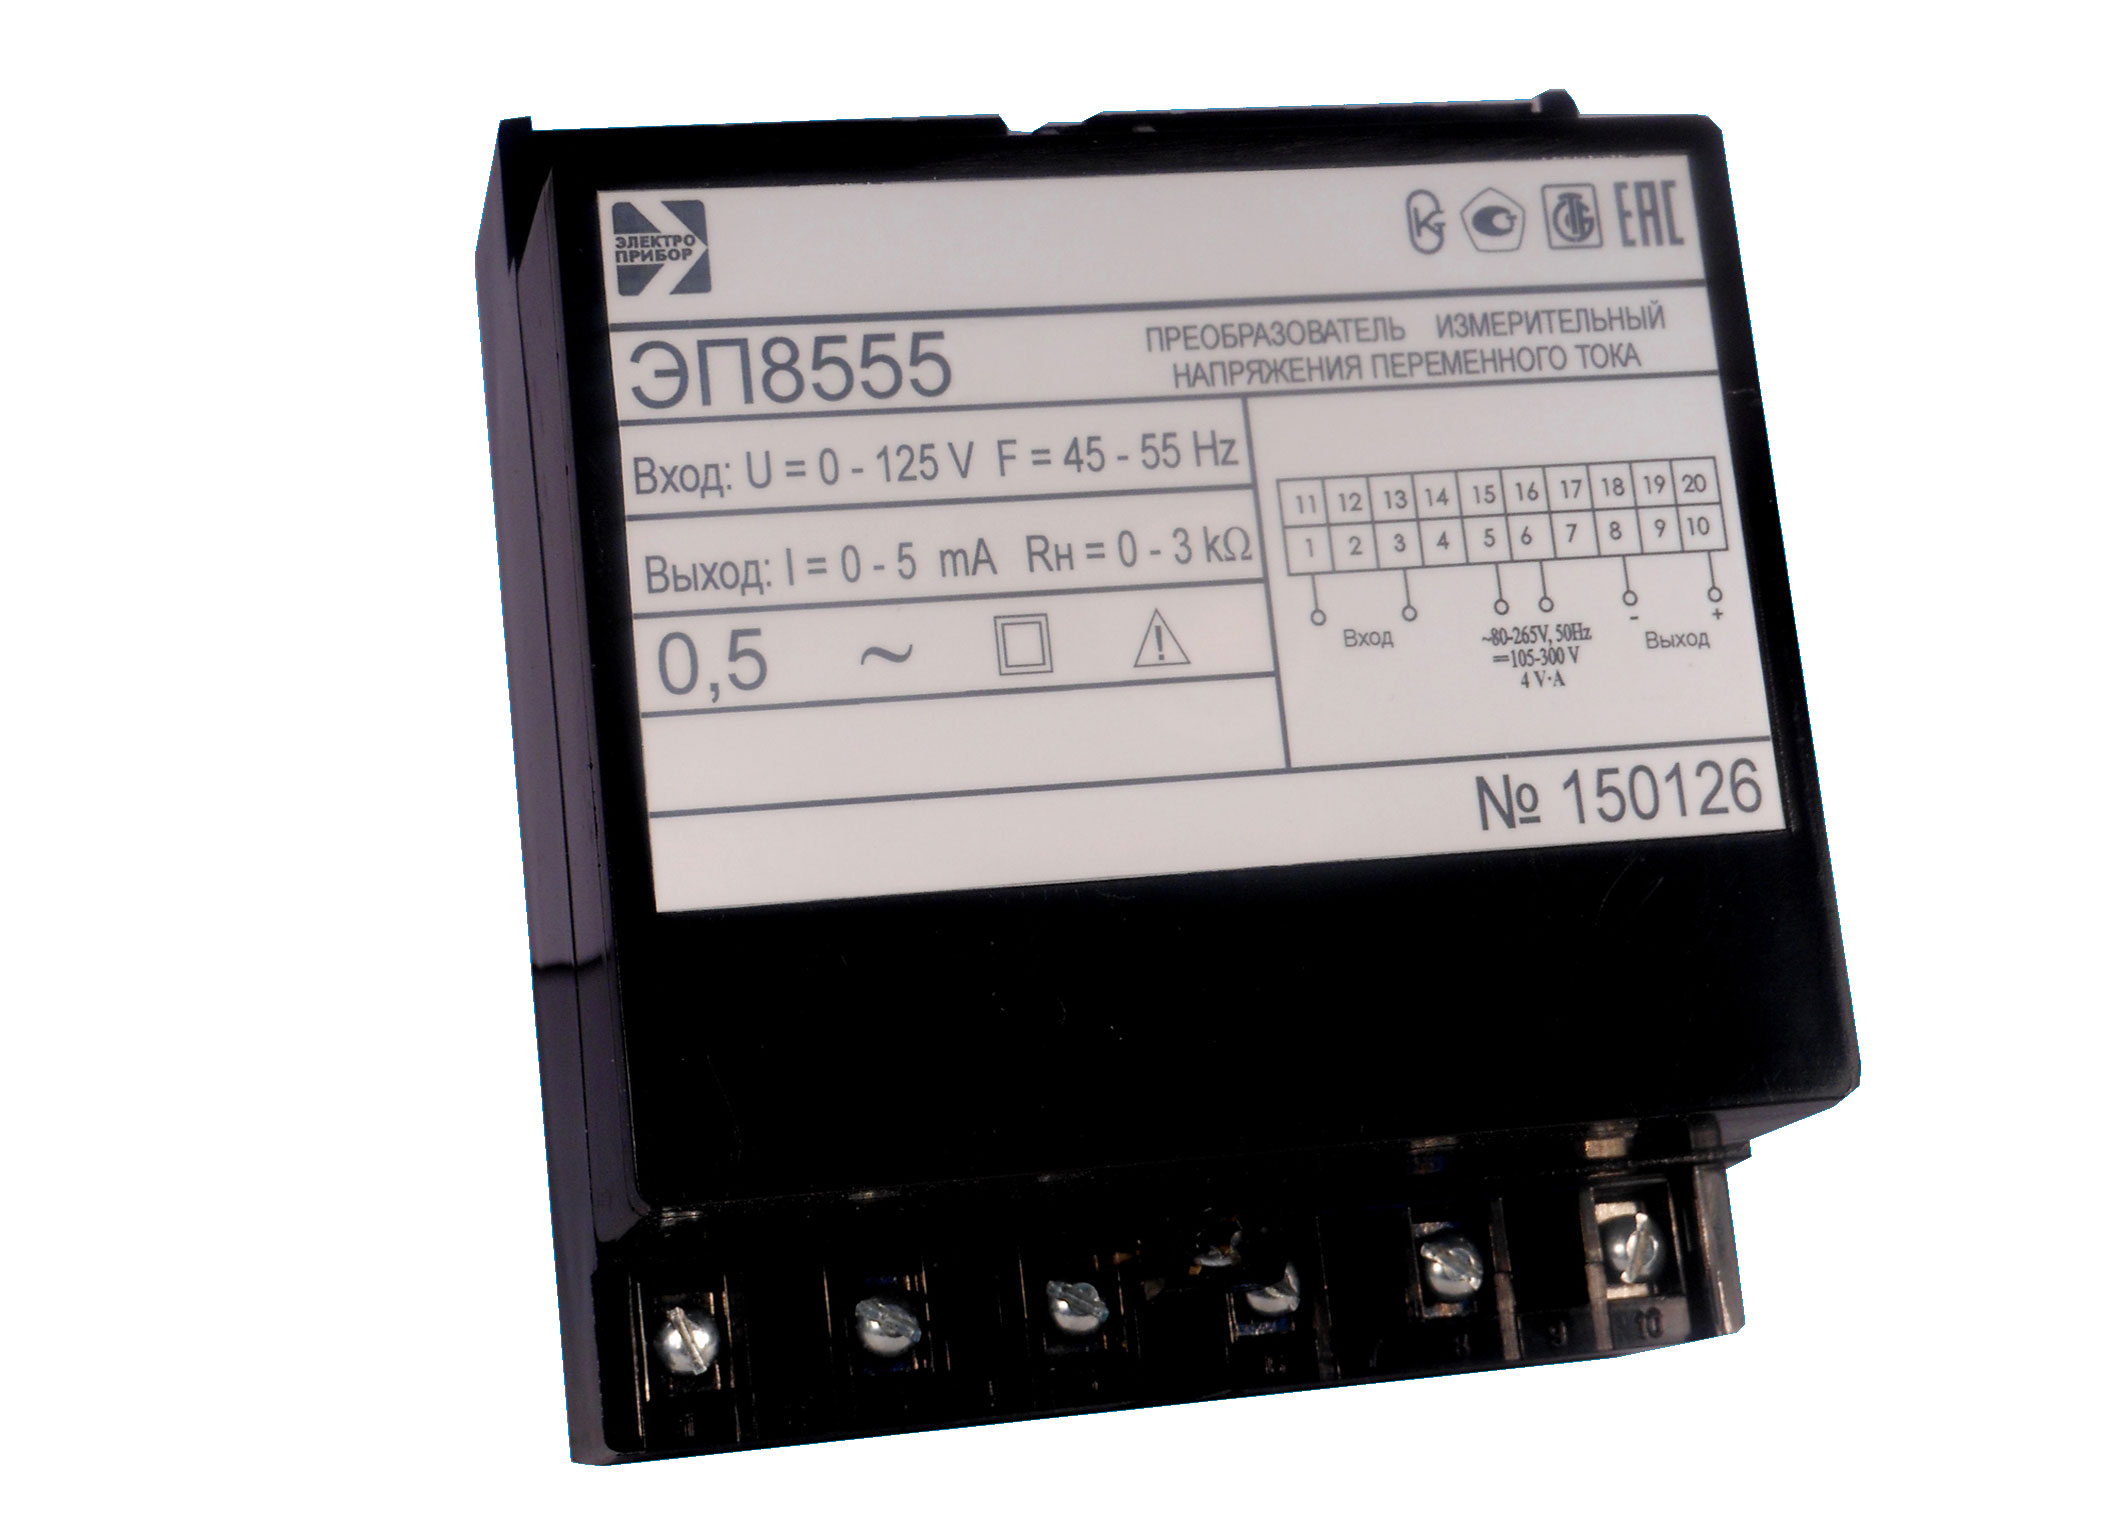 ЭП8555 — преобразователи измерительные напряжения переменного тока ЭП8555